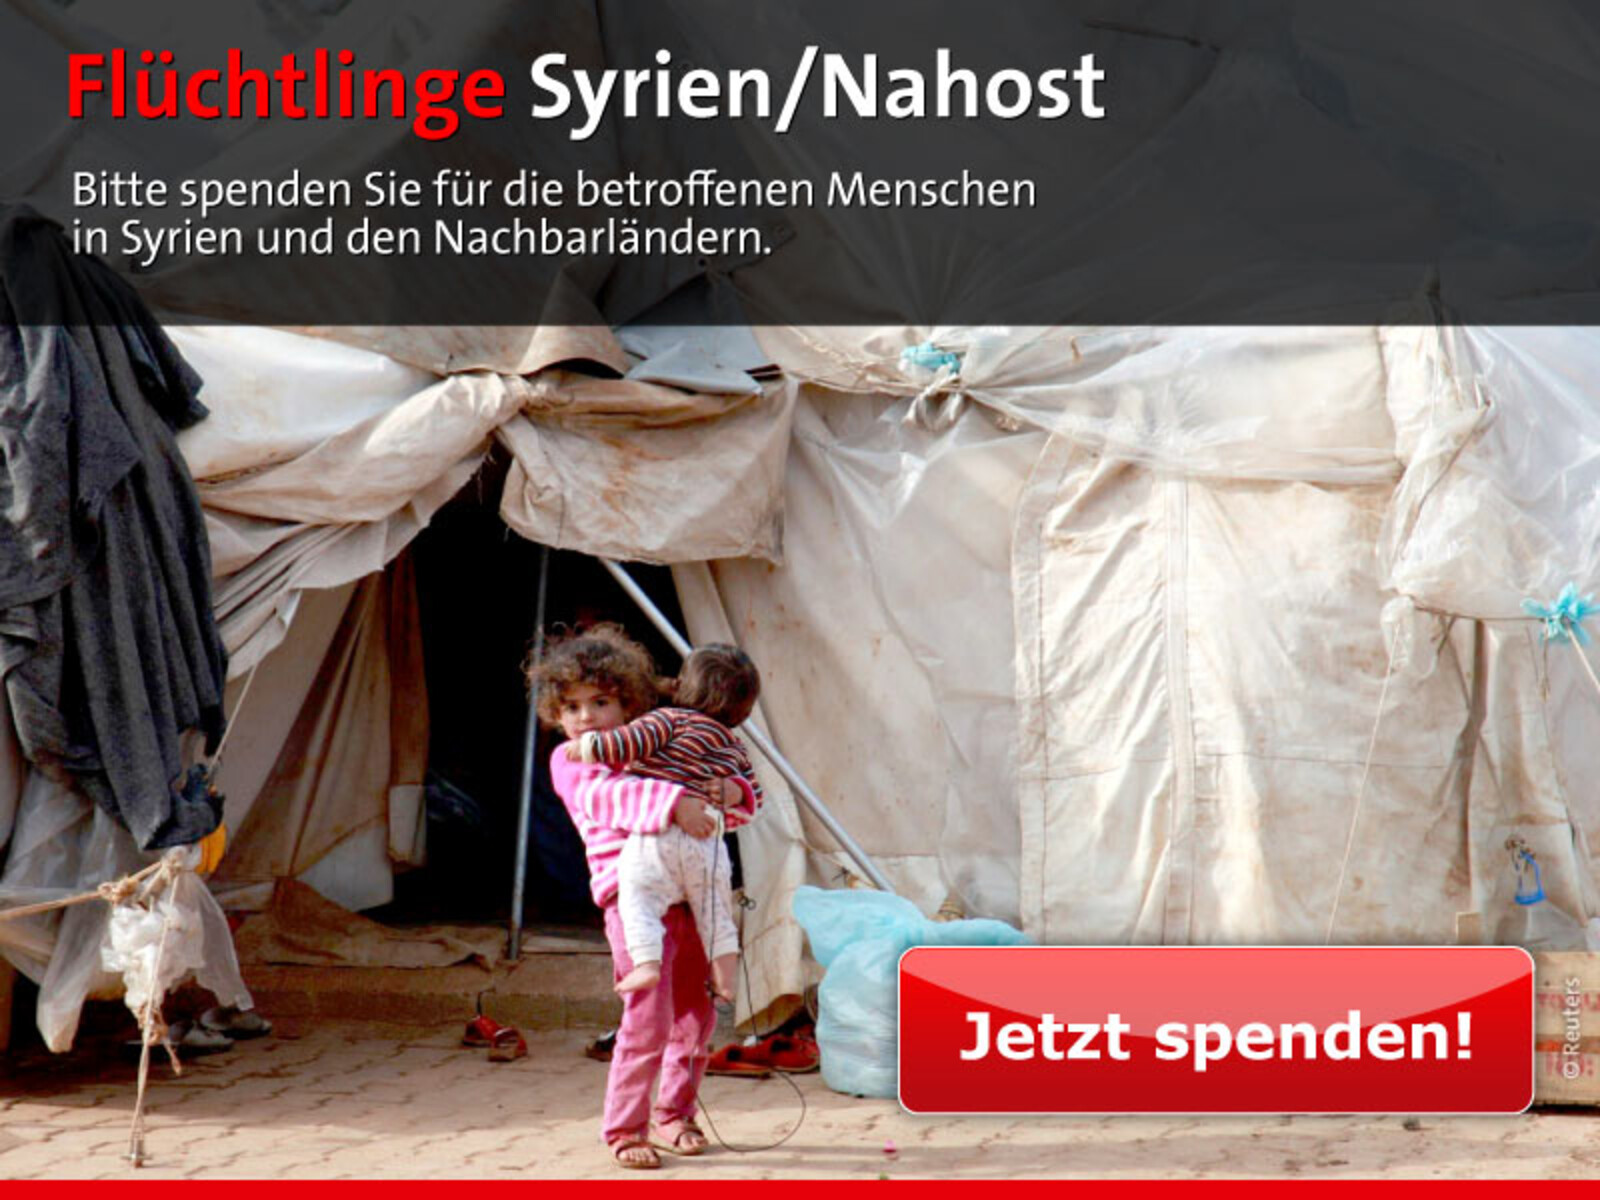 Bitte spenden Sie für die betroffenen Menschen in Syrien und den Nachbarländern